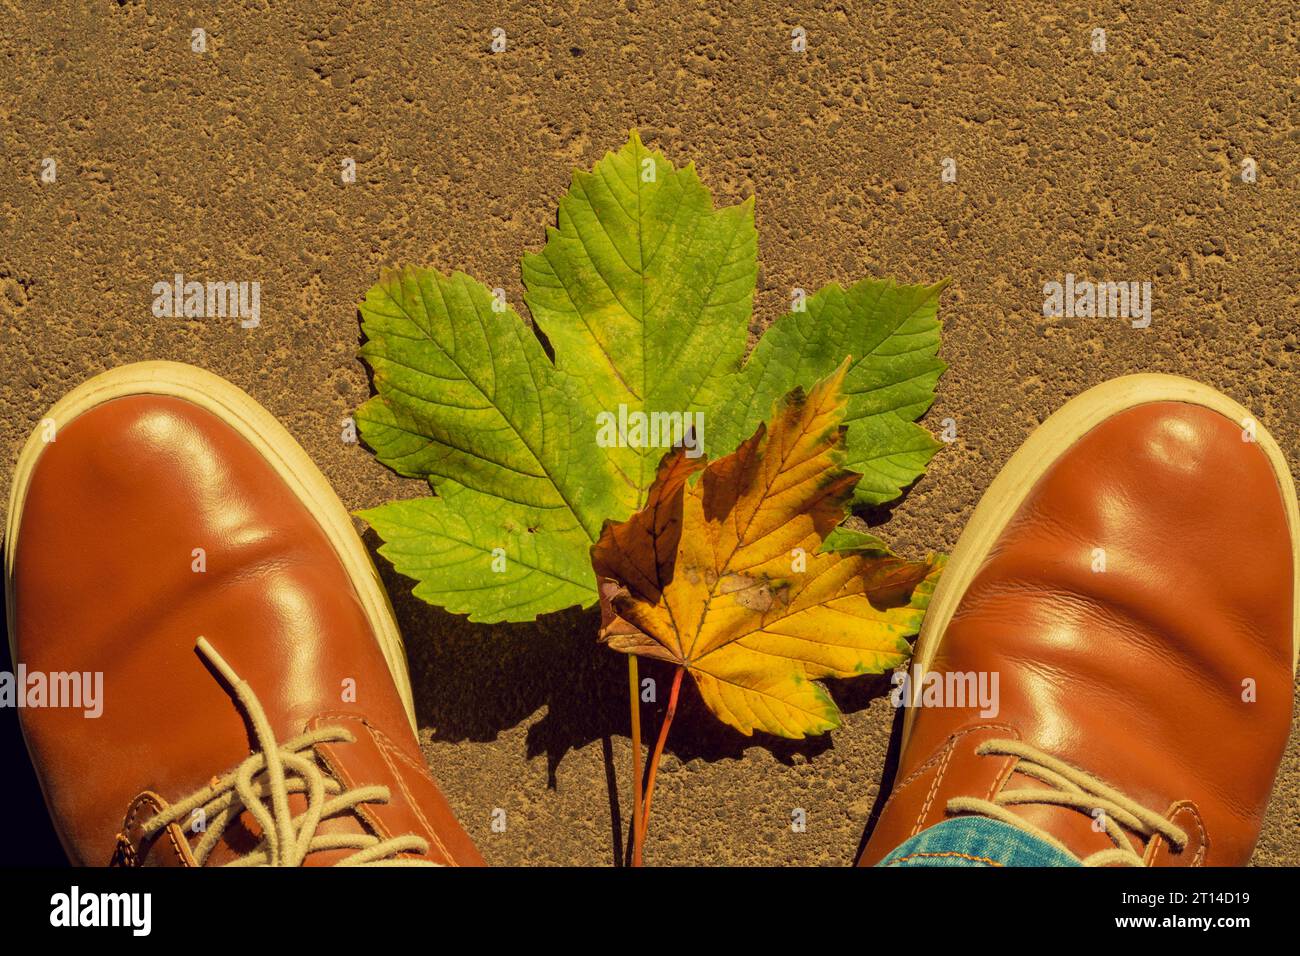 Zapatos de cuero de correa negra con piel sintética y medias amarillas en  los pies de niña Fotografía de stock - Alamy